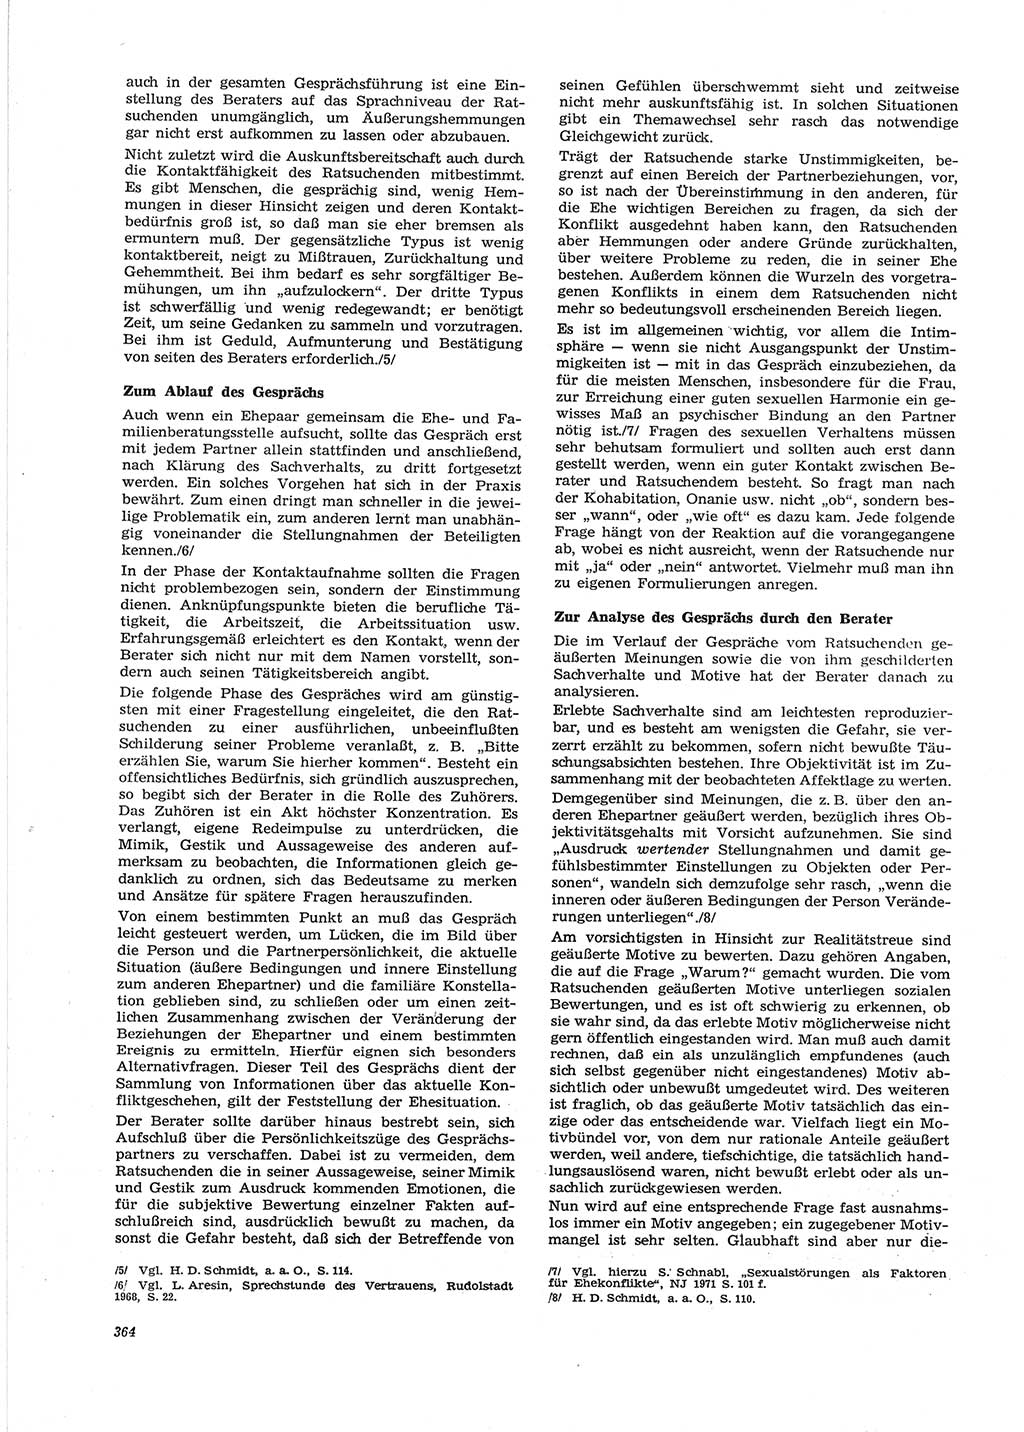 Neue Justiz (NJ), Zeitschrift für Recht und Rechtswissenschaft [Deutsche Demokratische Republik (DDR)], 28. Jahrgang 1974, Seite 364 (NJ DDR 1974, S. 364)